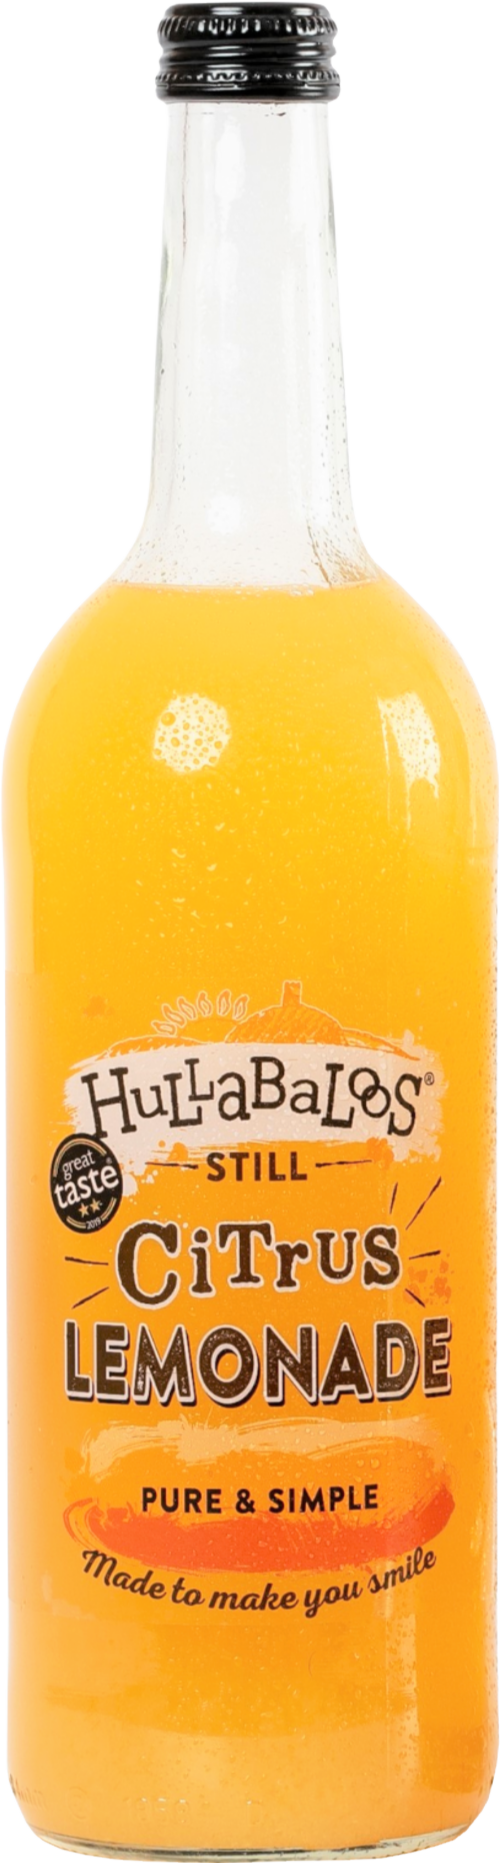 HULLABALOOS Still Citrus Lemonade 750ml